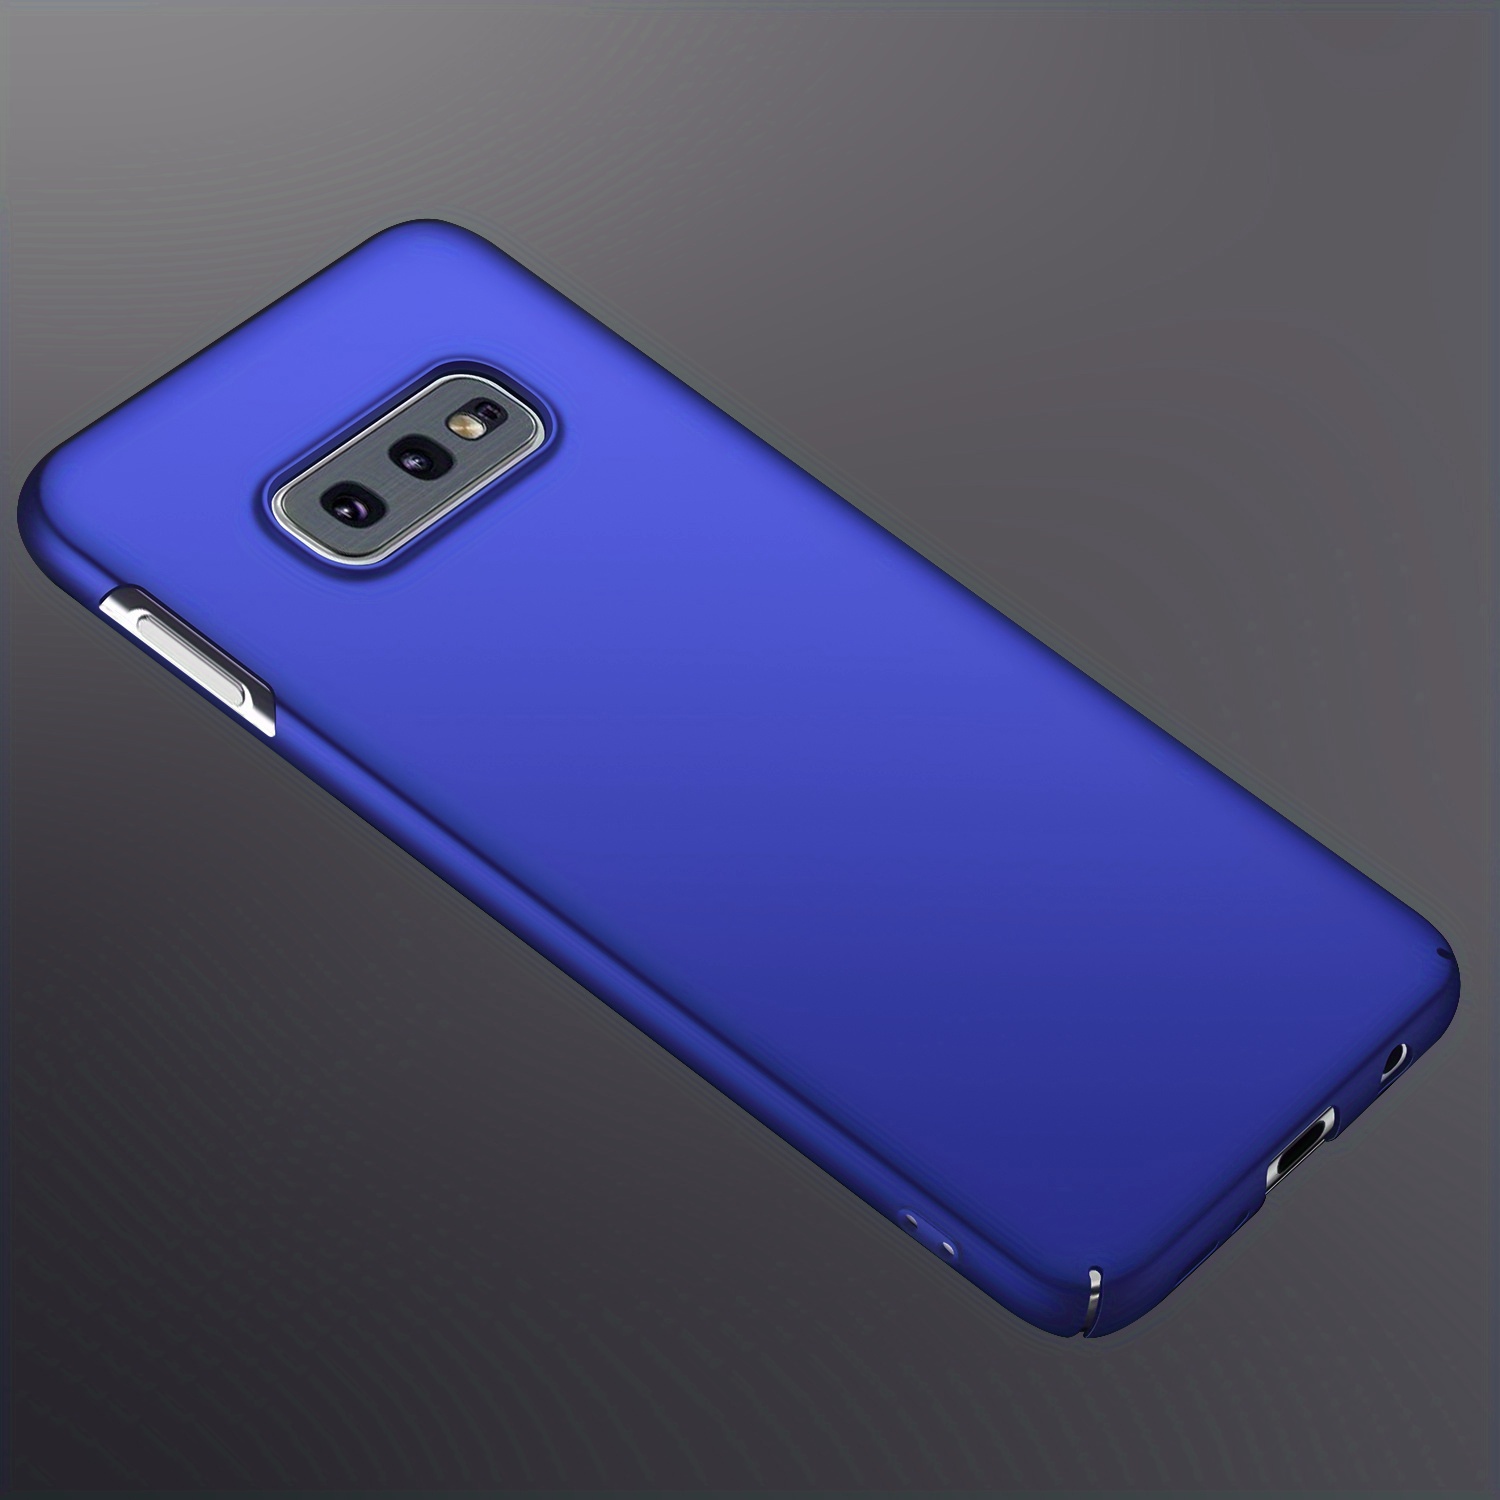 Funda para móvil - COFI Galaxy S10e, Compatible con Samsung Galaxy S10e,  Azul